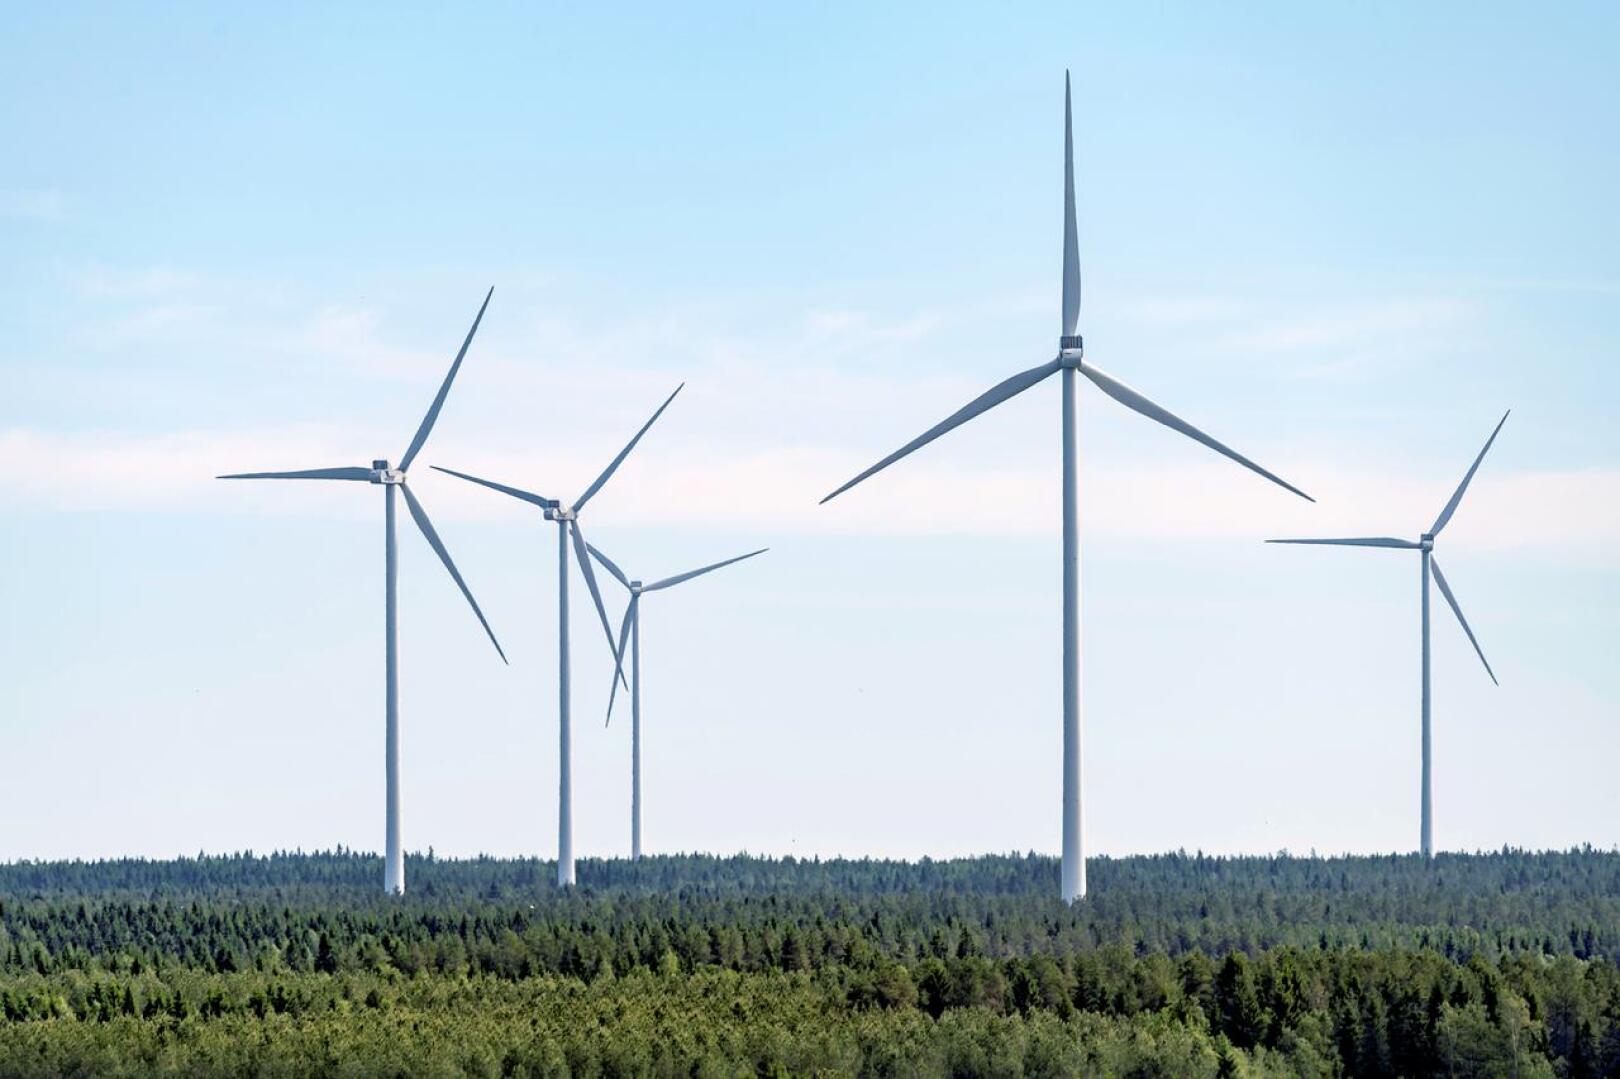 Kahdeksan voimalan tuulipuisto. Suunnitelmien mukaan sähköt, tiet ja perustukset valmistuvat heinäkuussa 2022 ja tuulipuisto alkaa tuottaa sähköä loppuvuodesta 2022. 